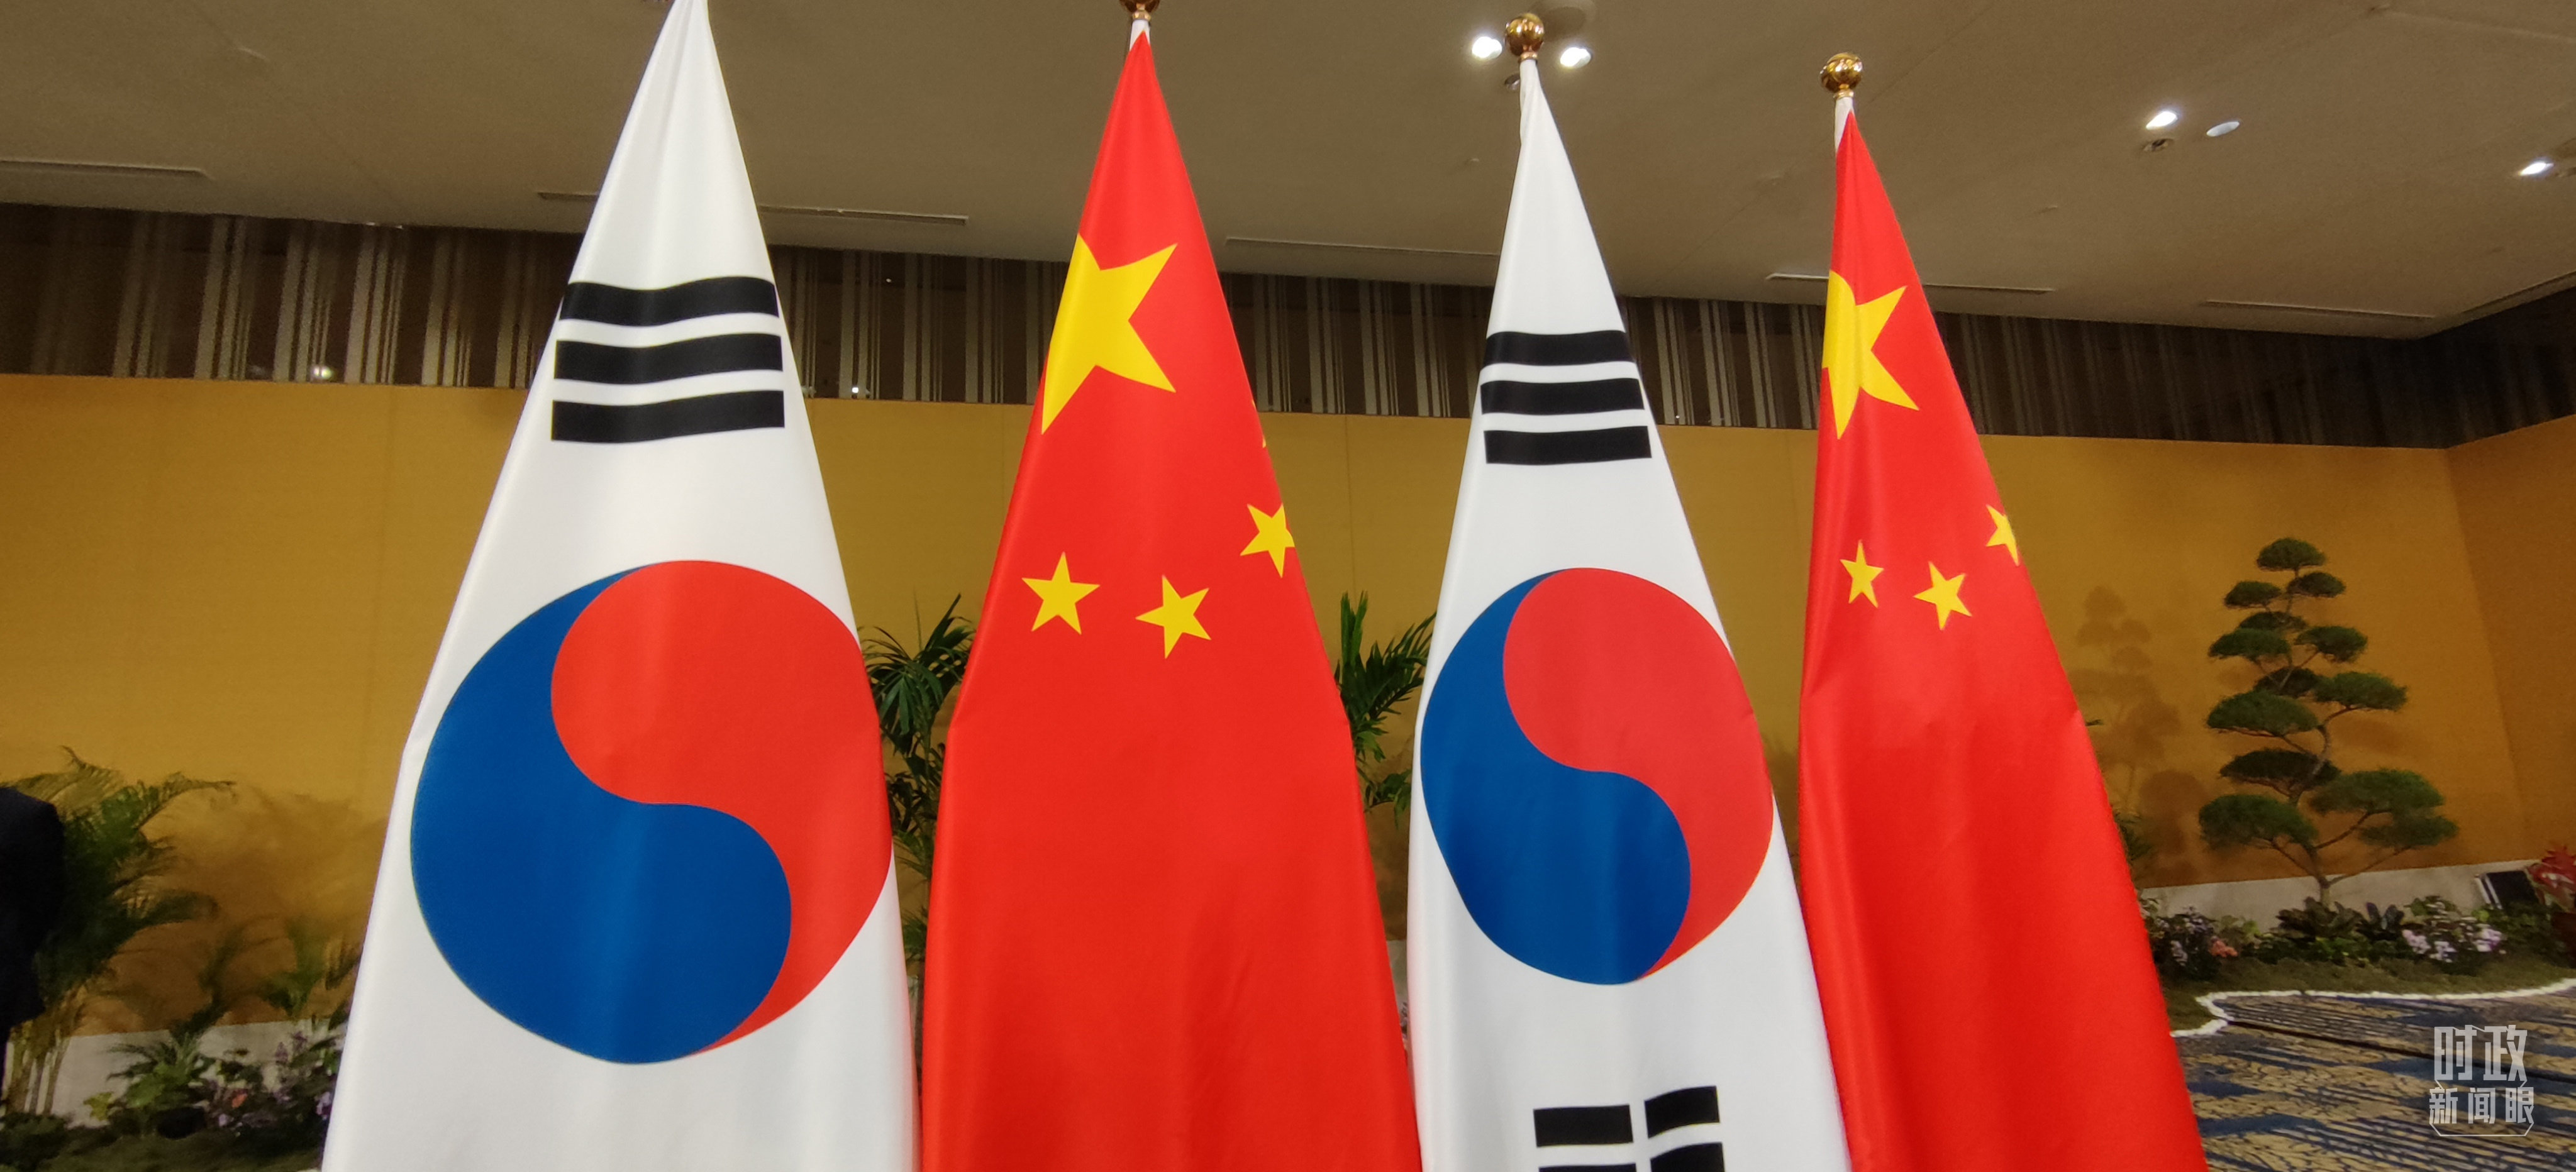 △会见现场的中国和韩国两国国旗。（总台央视记者耿小龙拍摄）